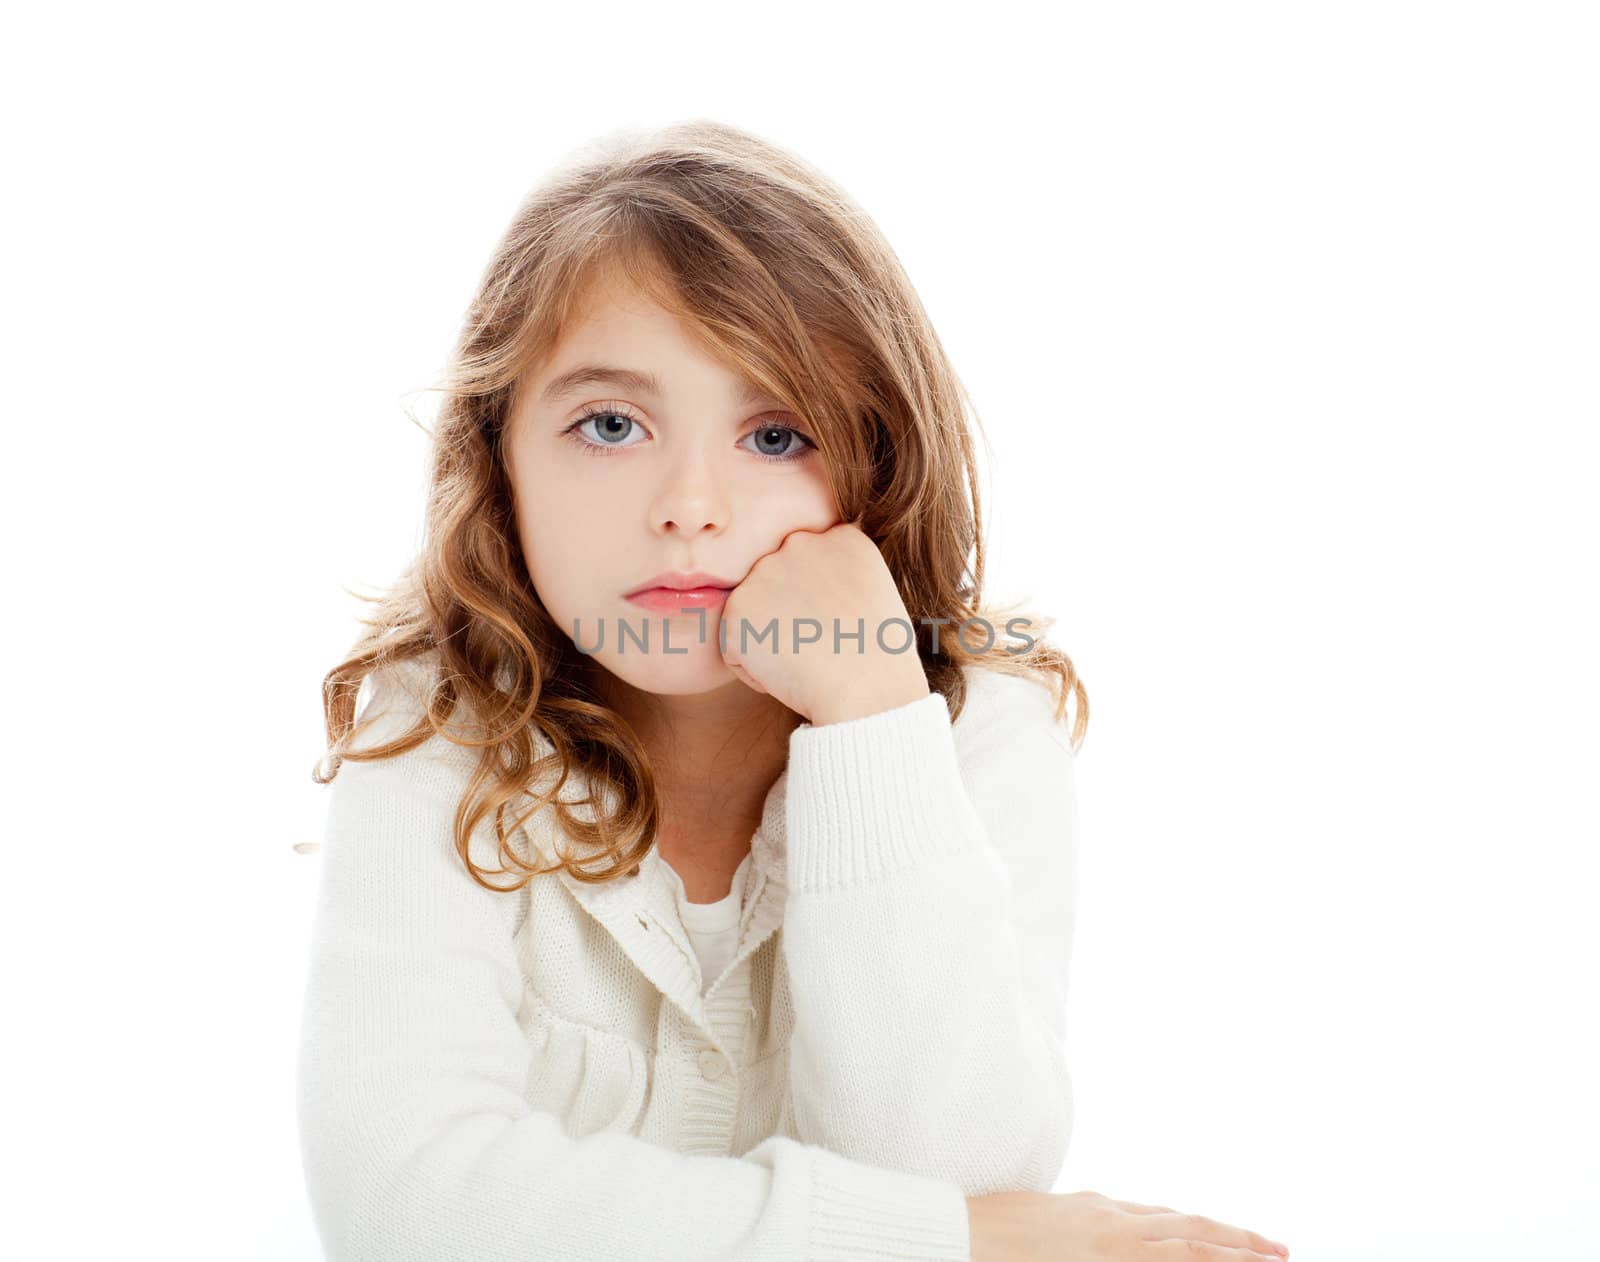 brunette kid girl portrait on white desk table isolated studio background